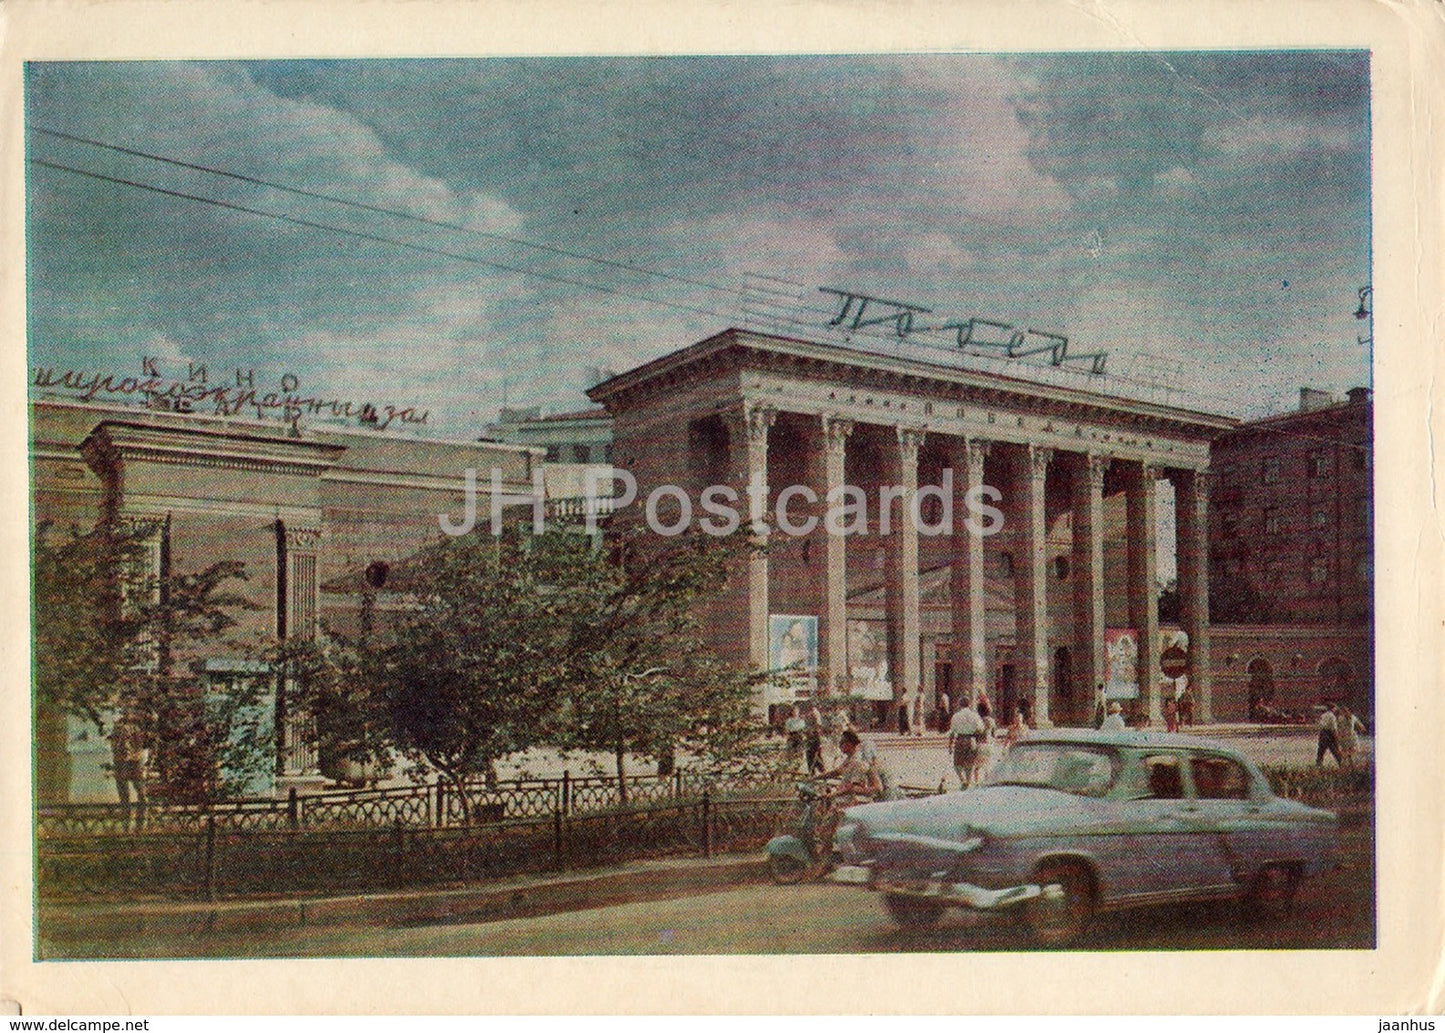 Novosibirsk - cinema theatre Pobeda - car Volga - 1962 - Russia USSR - unused - JH Postcards